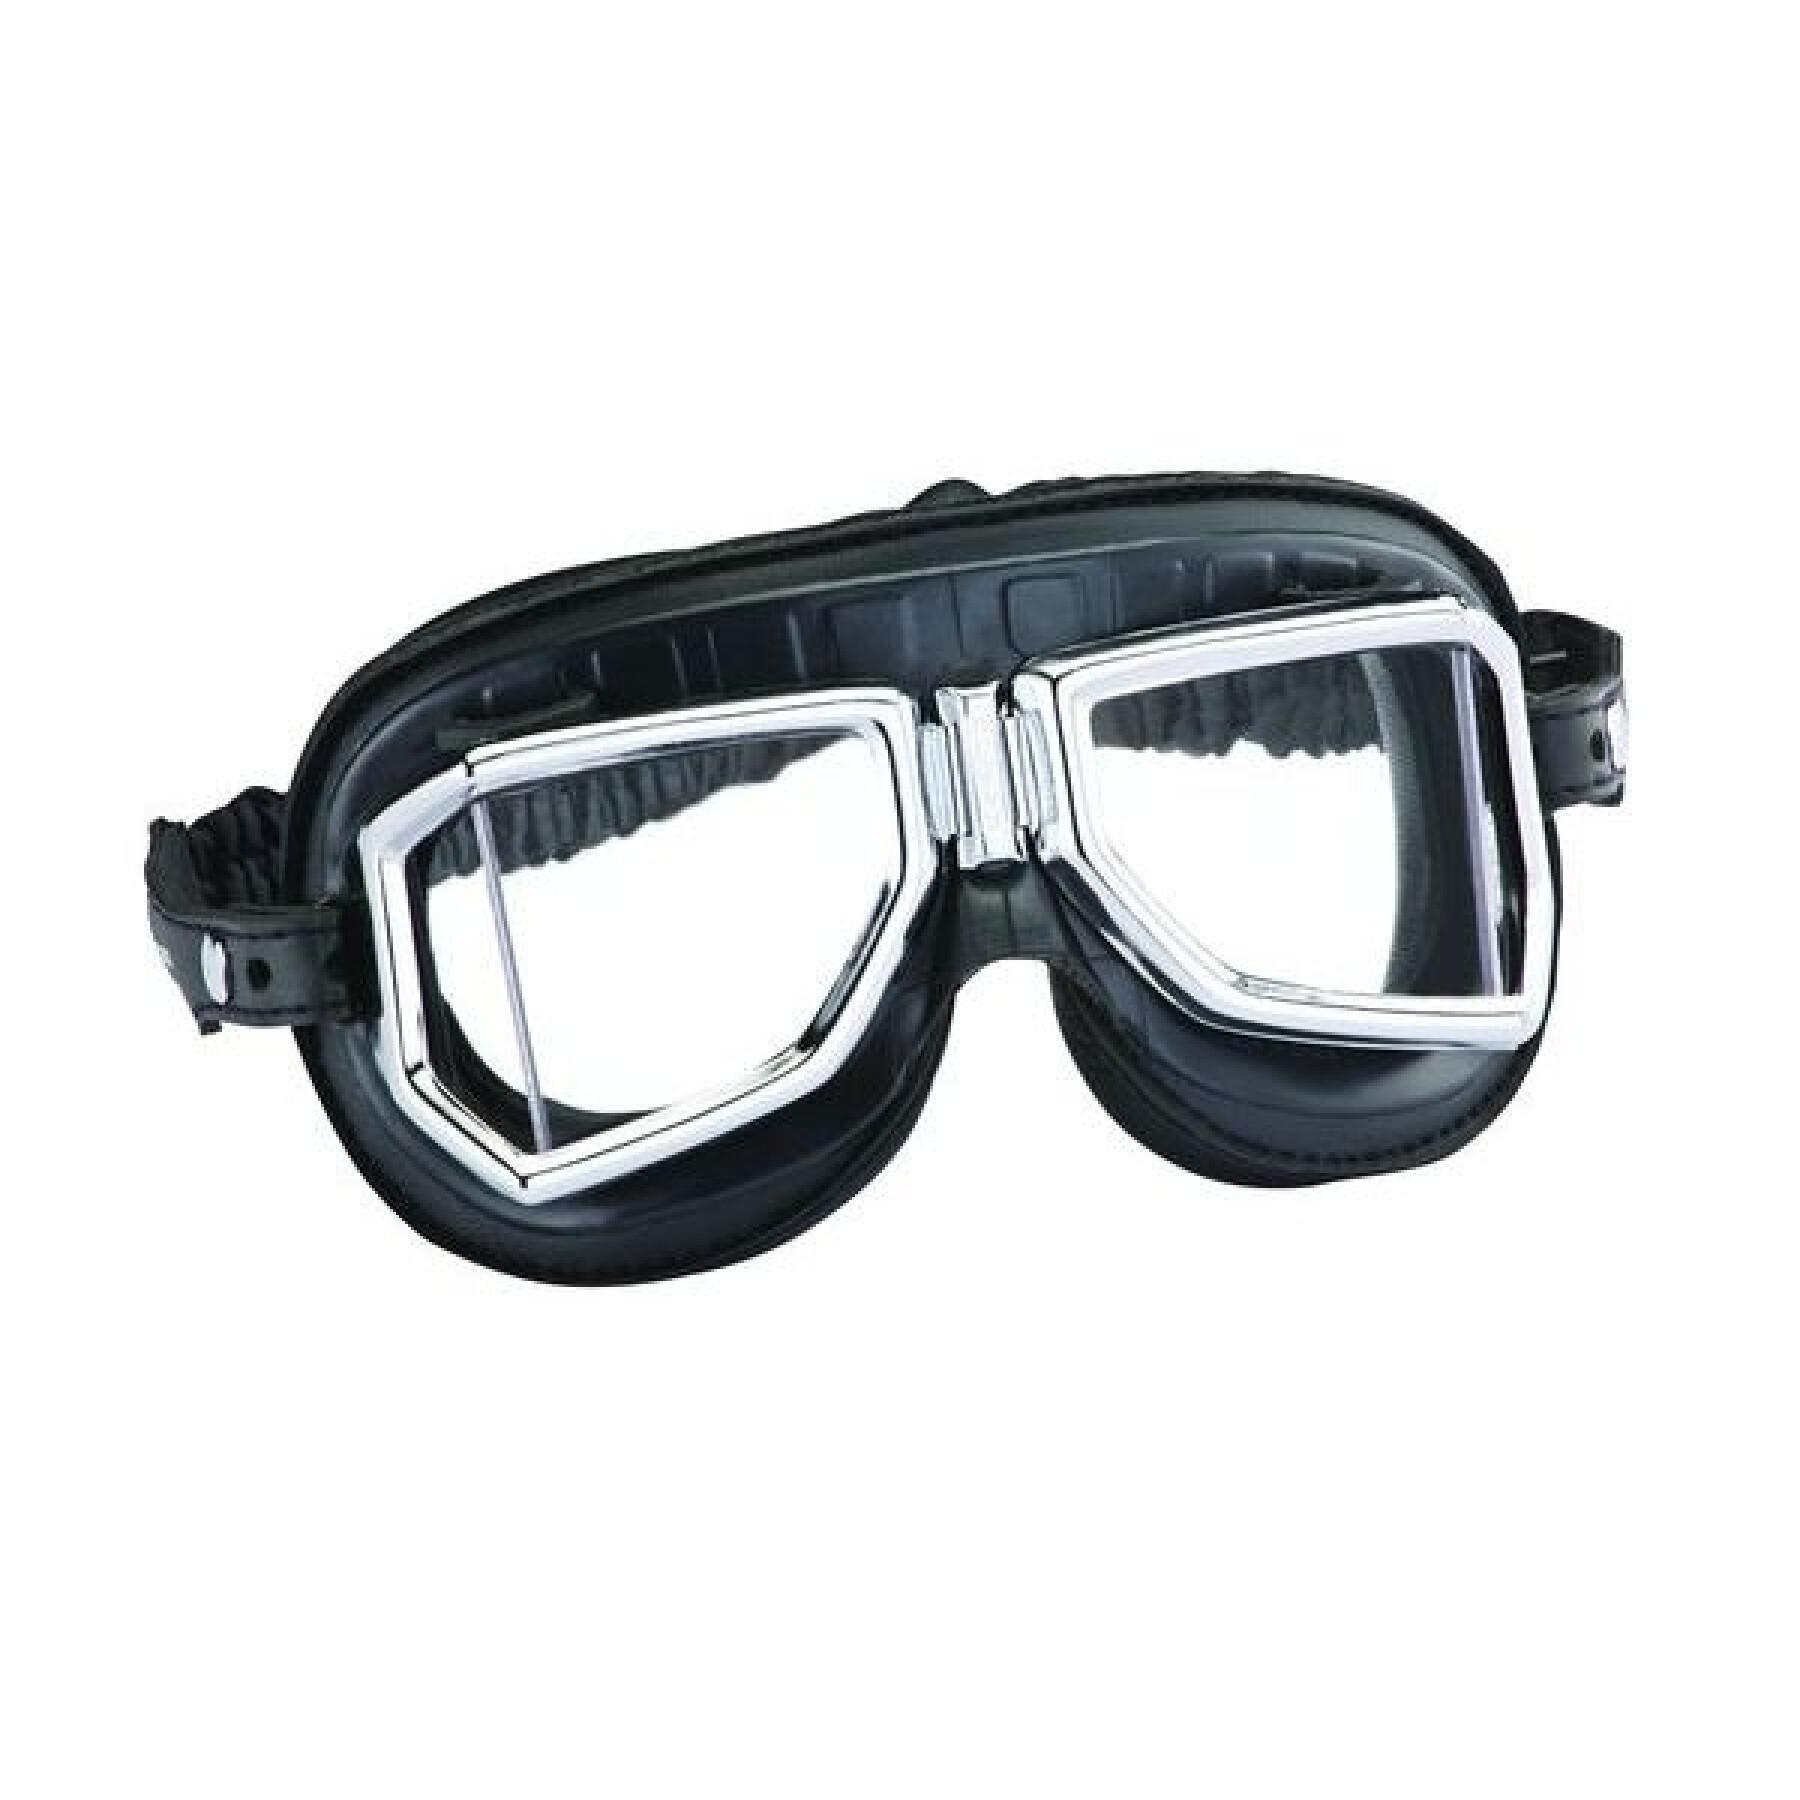 Motorbril Climax 513SNP